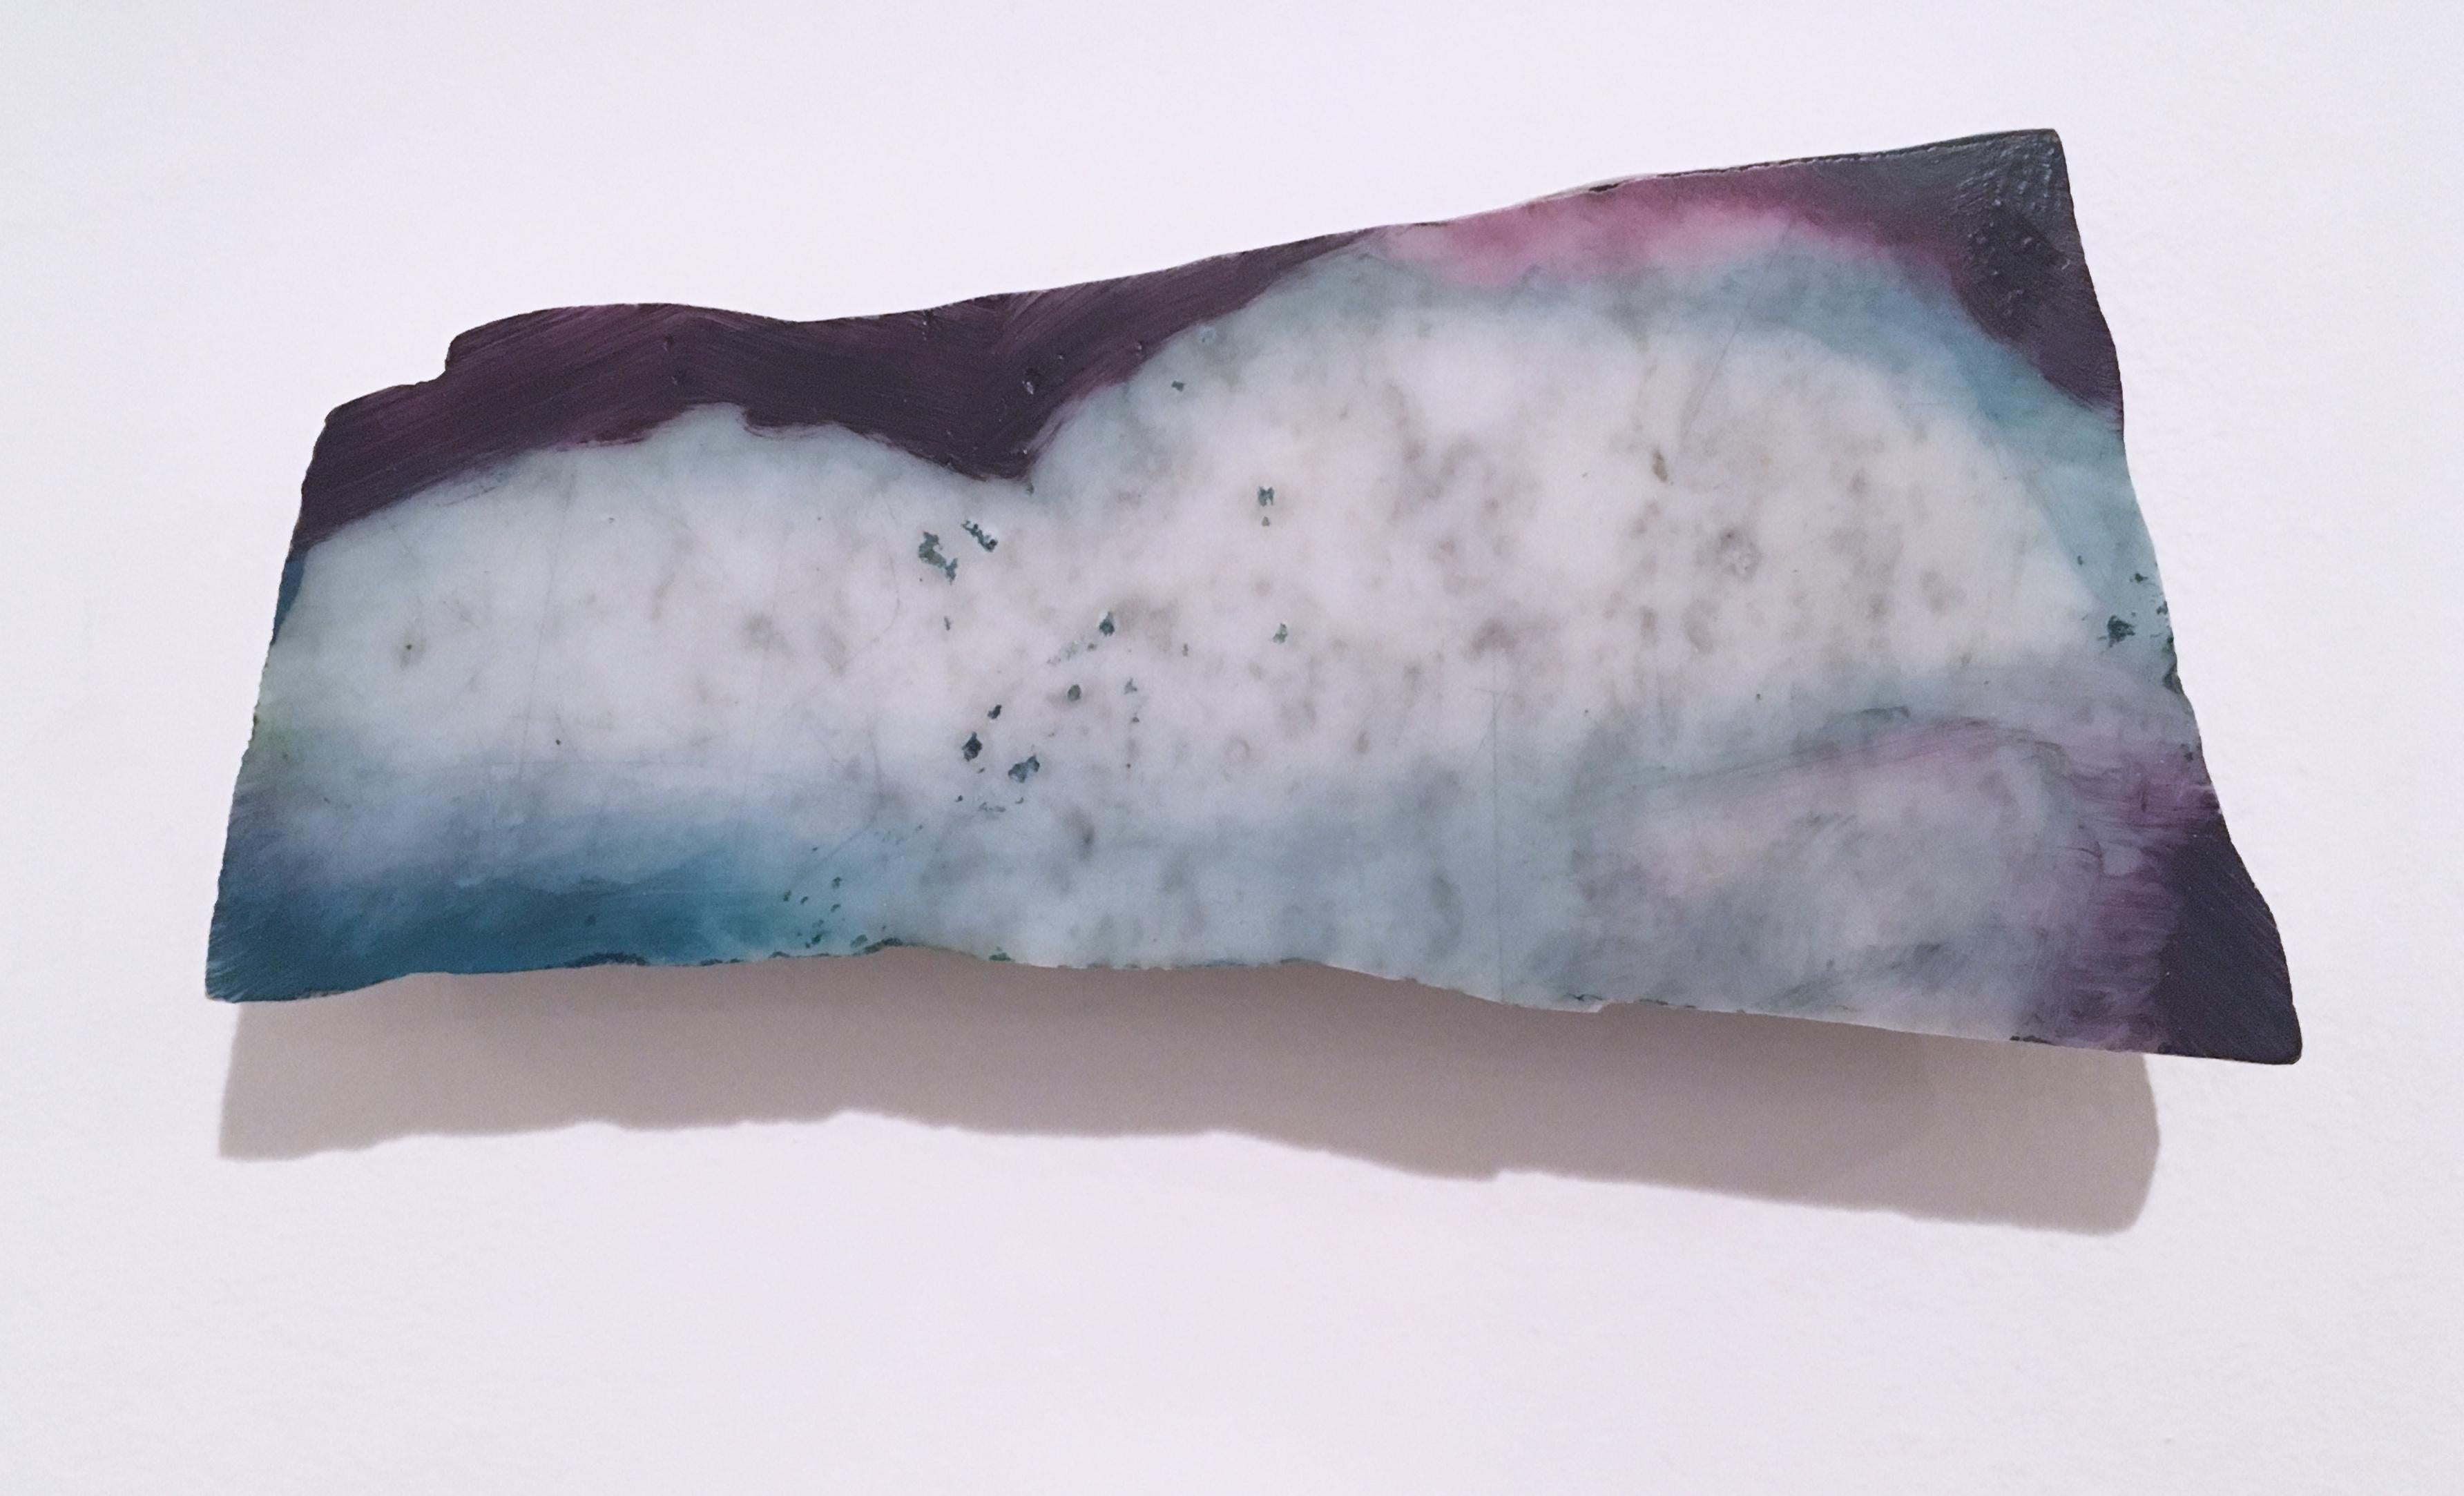 Abstract Sculpture Tom Banks - Sans titre « Marble Fragment 4 » 2019, huile, paysage, sculpture murale, nuages, bleu